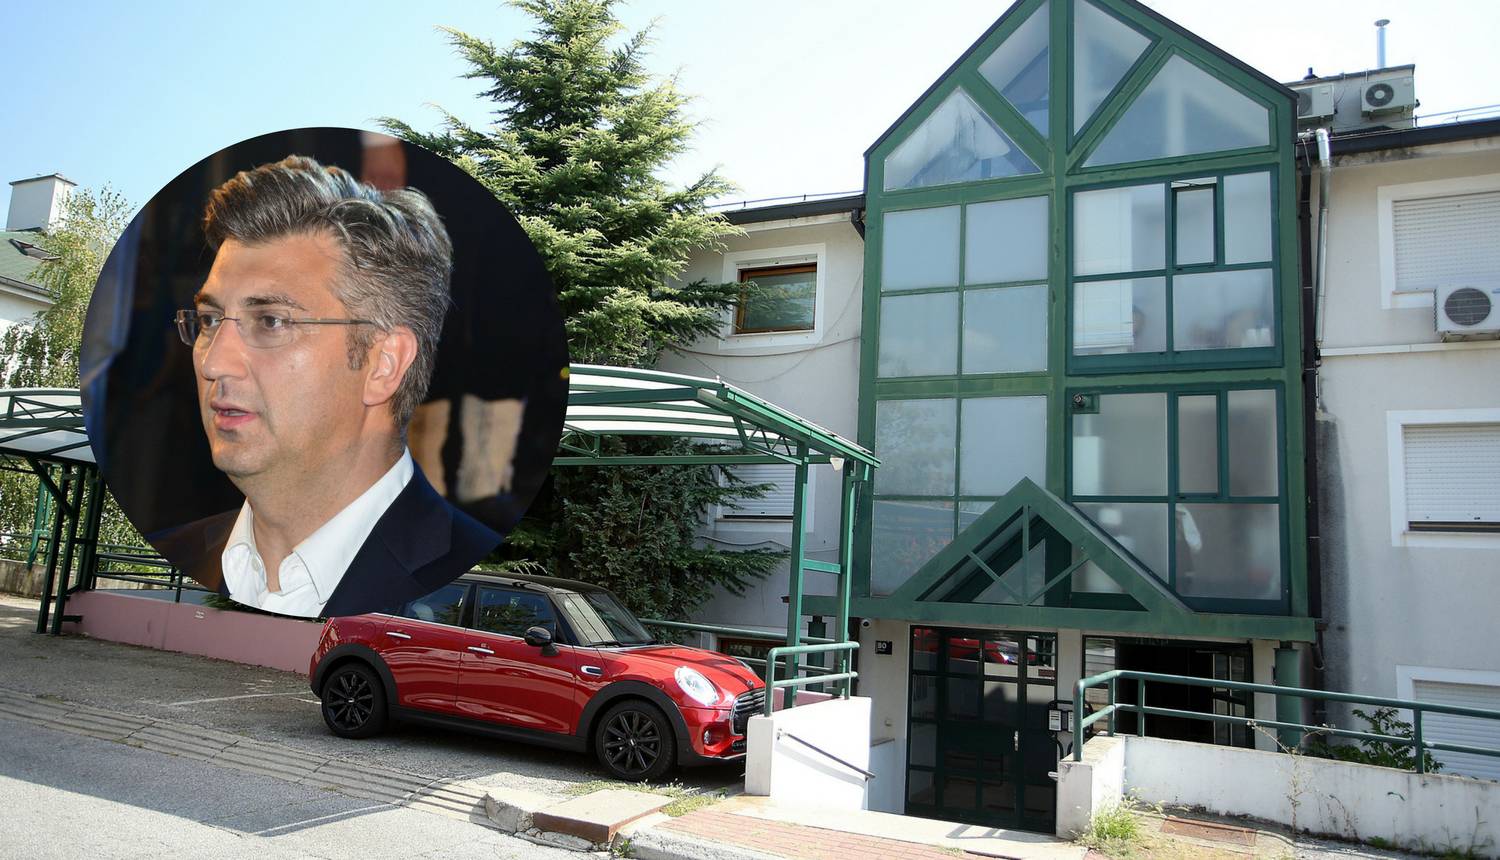 Plenković ima stan vrijedan 2,6 milijuna kuna, a kredita nema